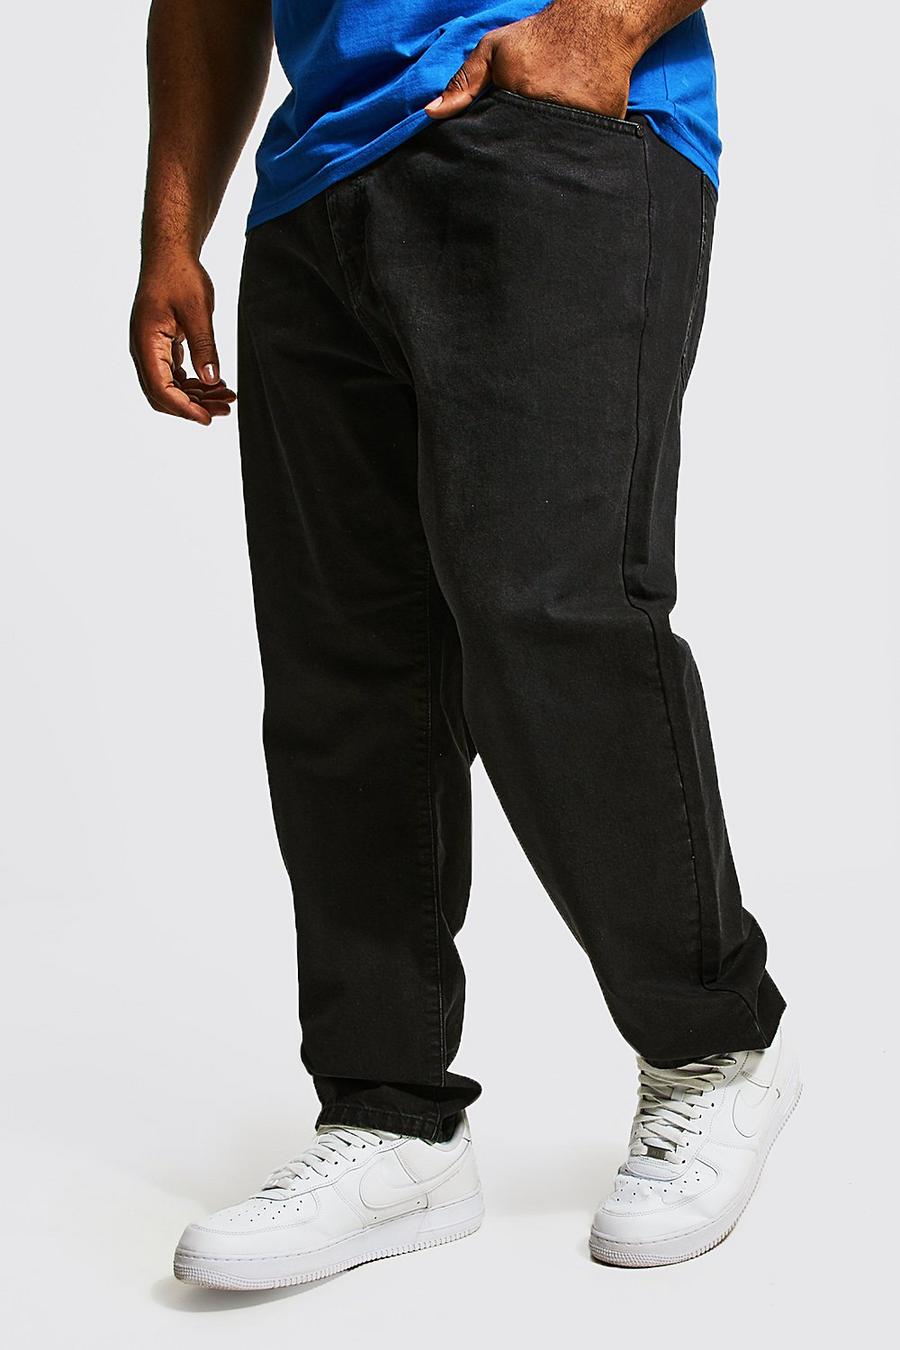 שחור דהוי ג'ינס בגזרה צרה בשילוב כותנה ממוחזרת, מידות גדולות